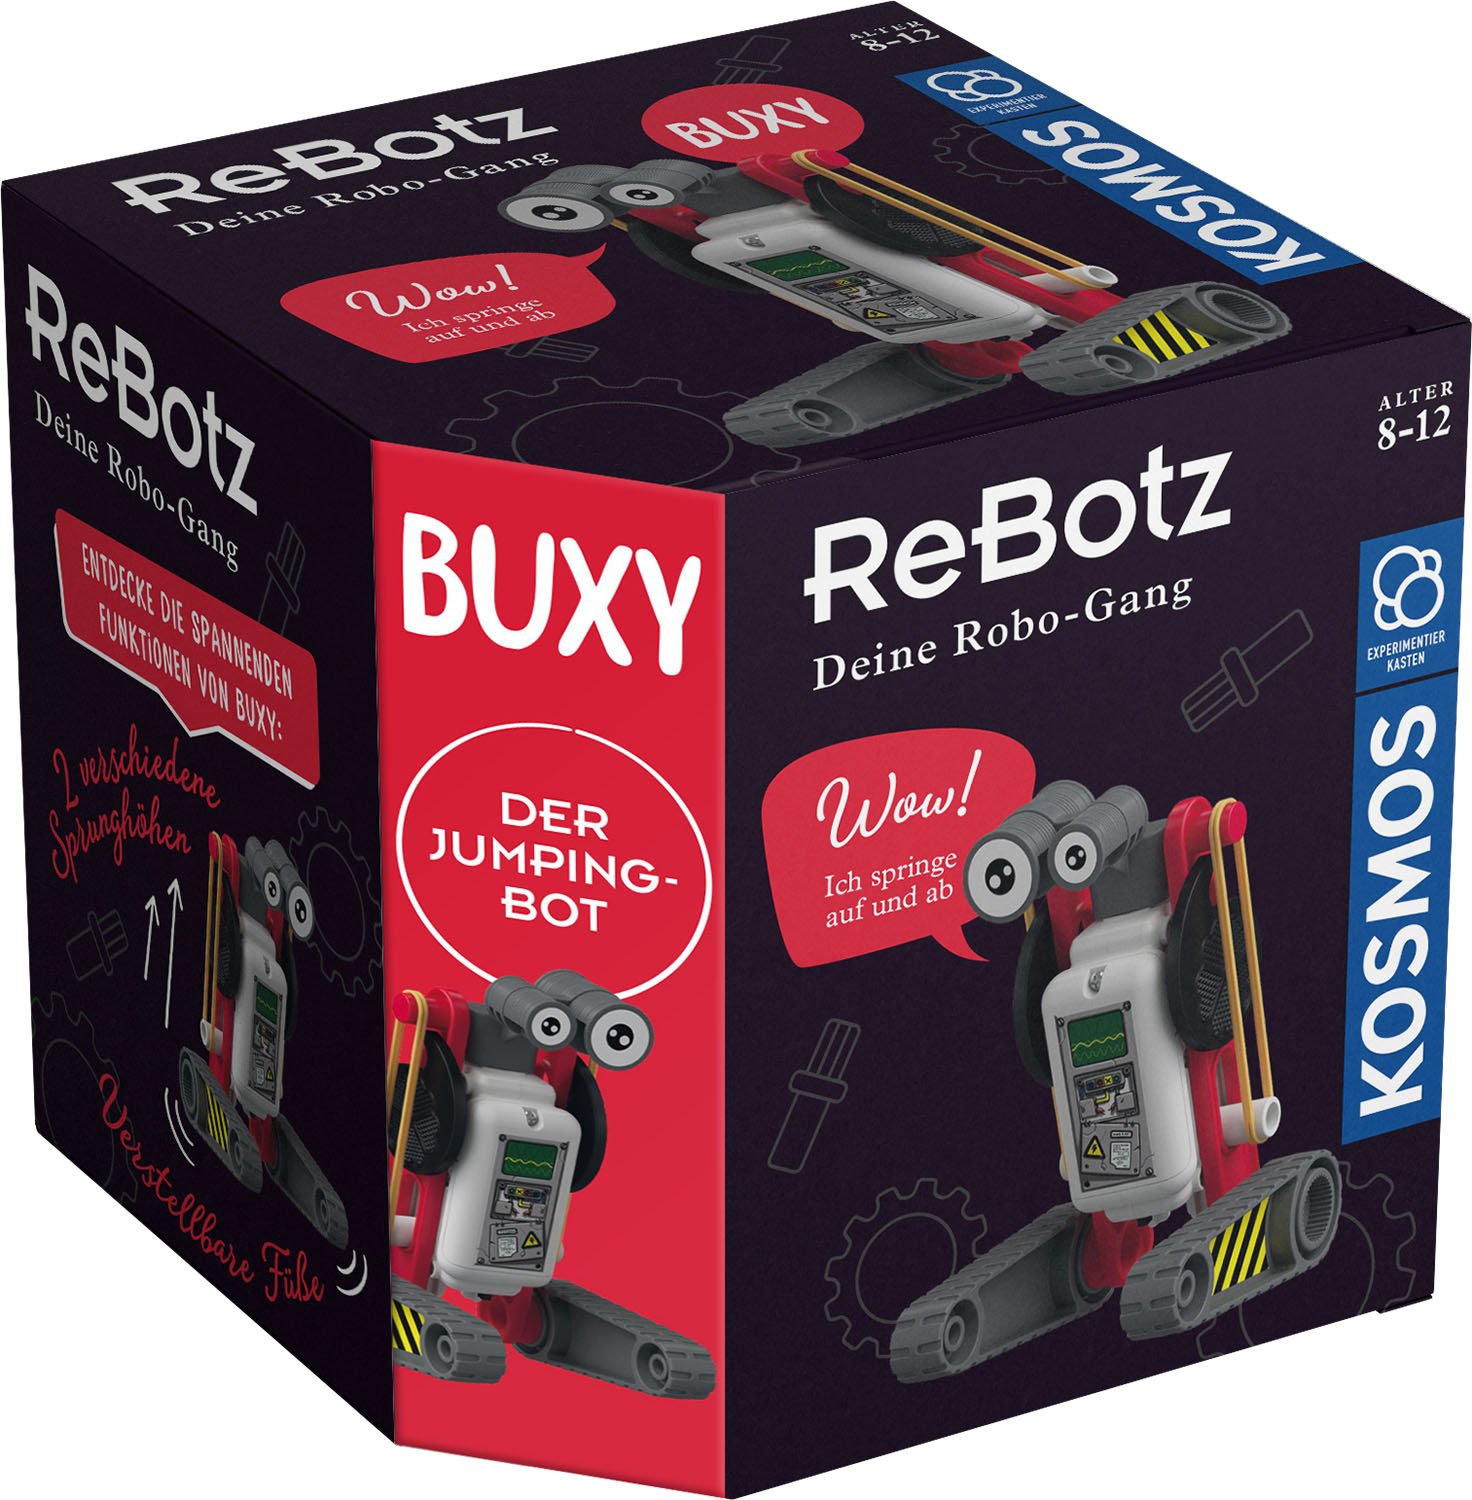 ReBotz - Buxy der Jumping Bot